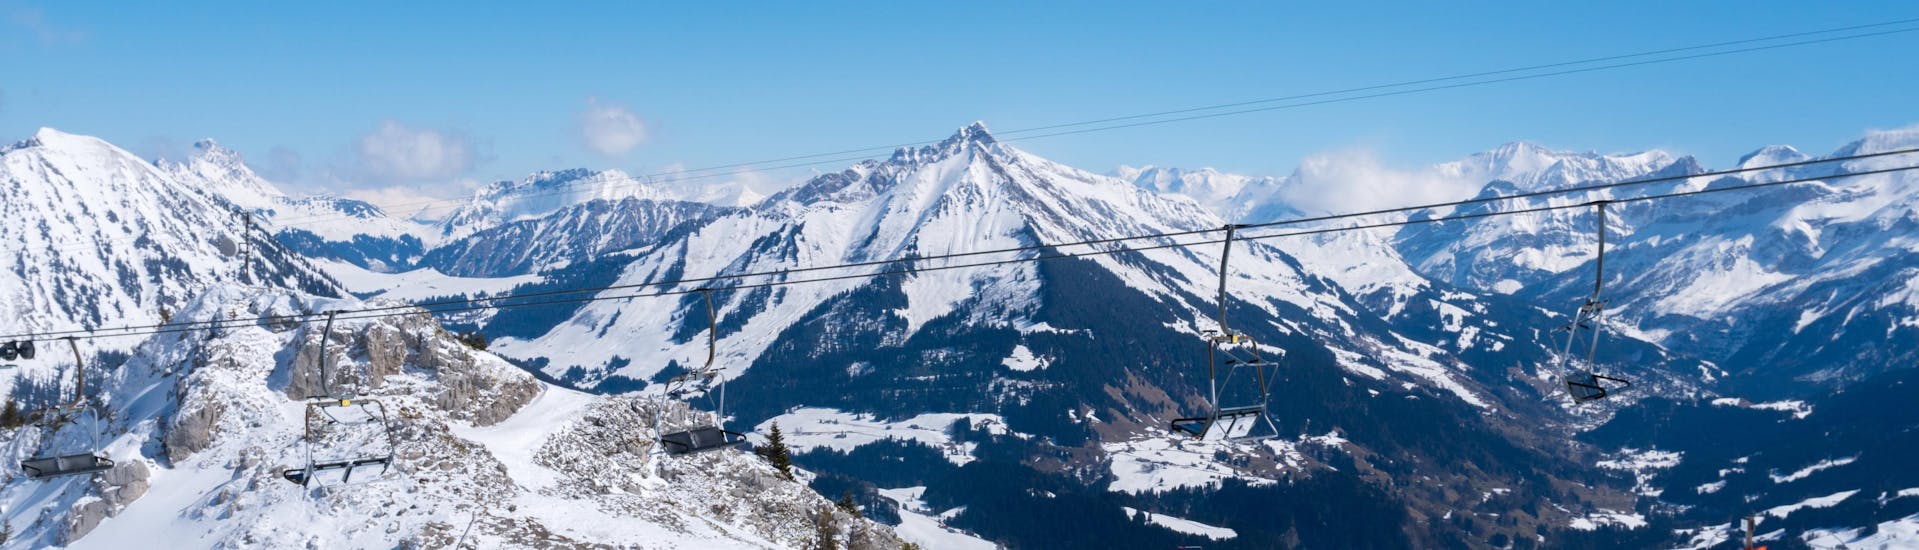 Mehrere Skifahrer nutzen das Pistenangebot im schweizerischen Skigebiet Leysin, einer beliebten Destination für angehende Skifahrer in der sie bei einer der örtlichen Skischulen einen Skikurs buchen können.